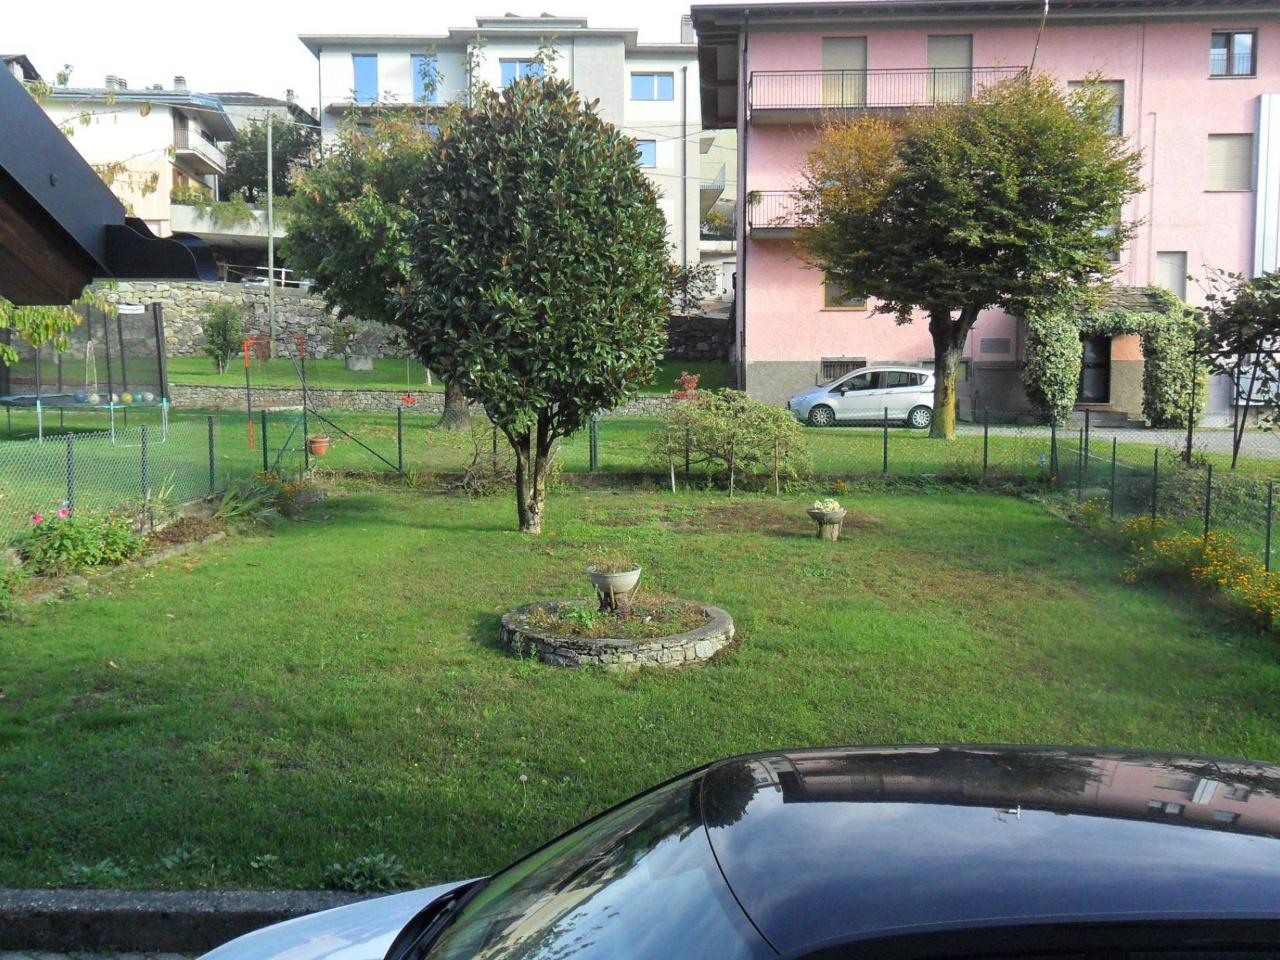 Appartamento in vendita a Berbenno Di Valtellina